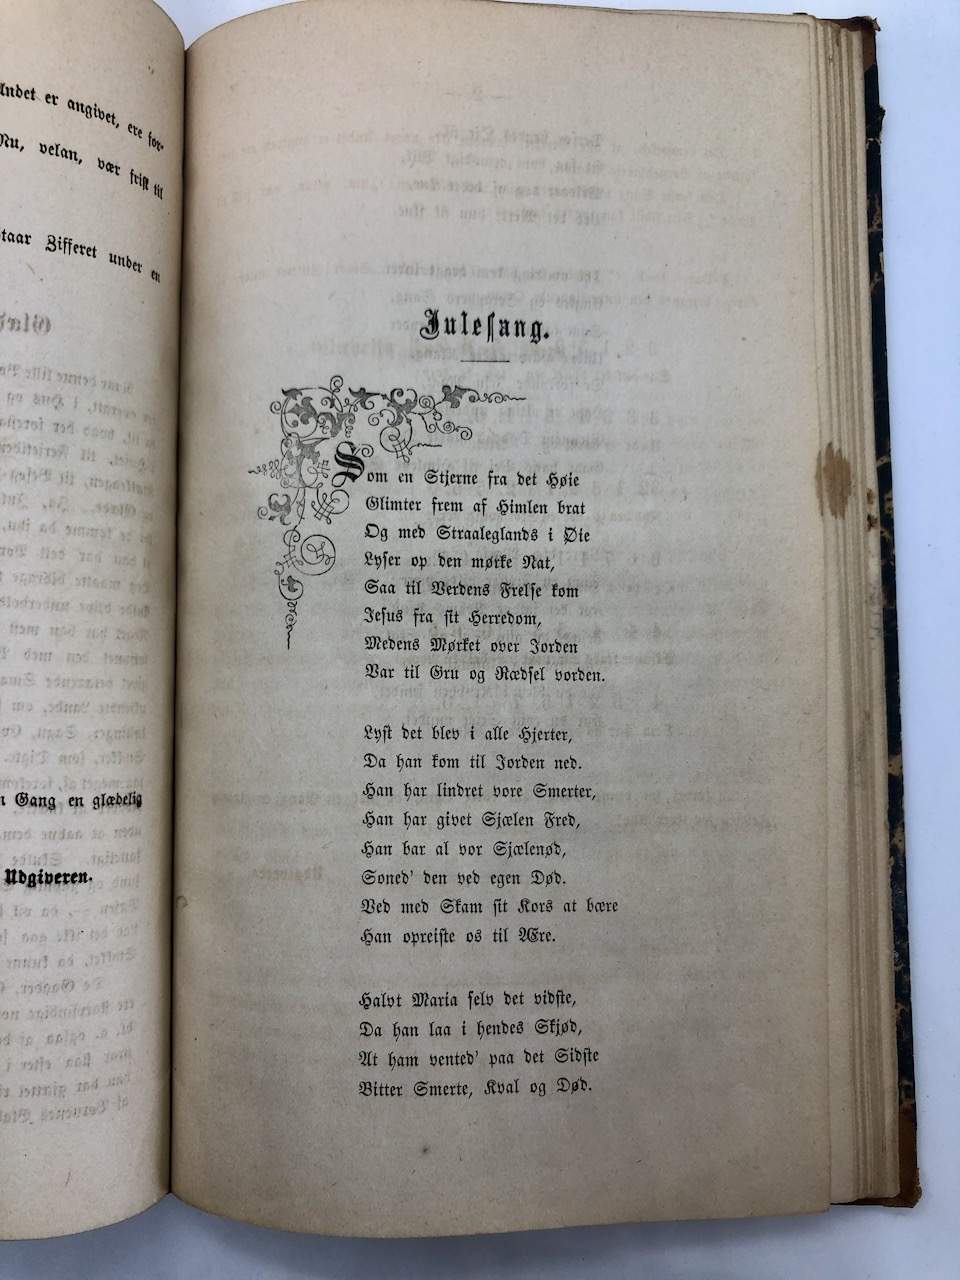 Første publisering av Terje Vigen av Henrik Ibsen 1862